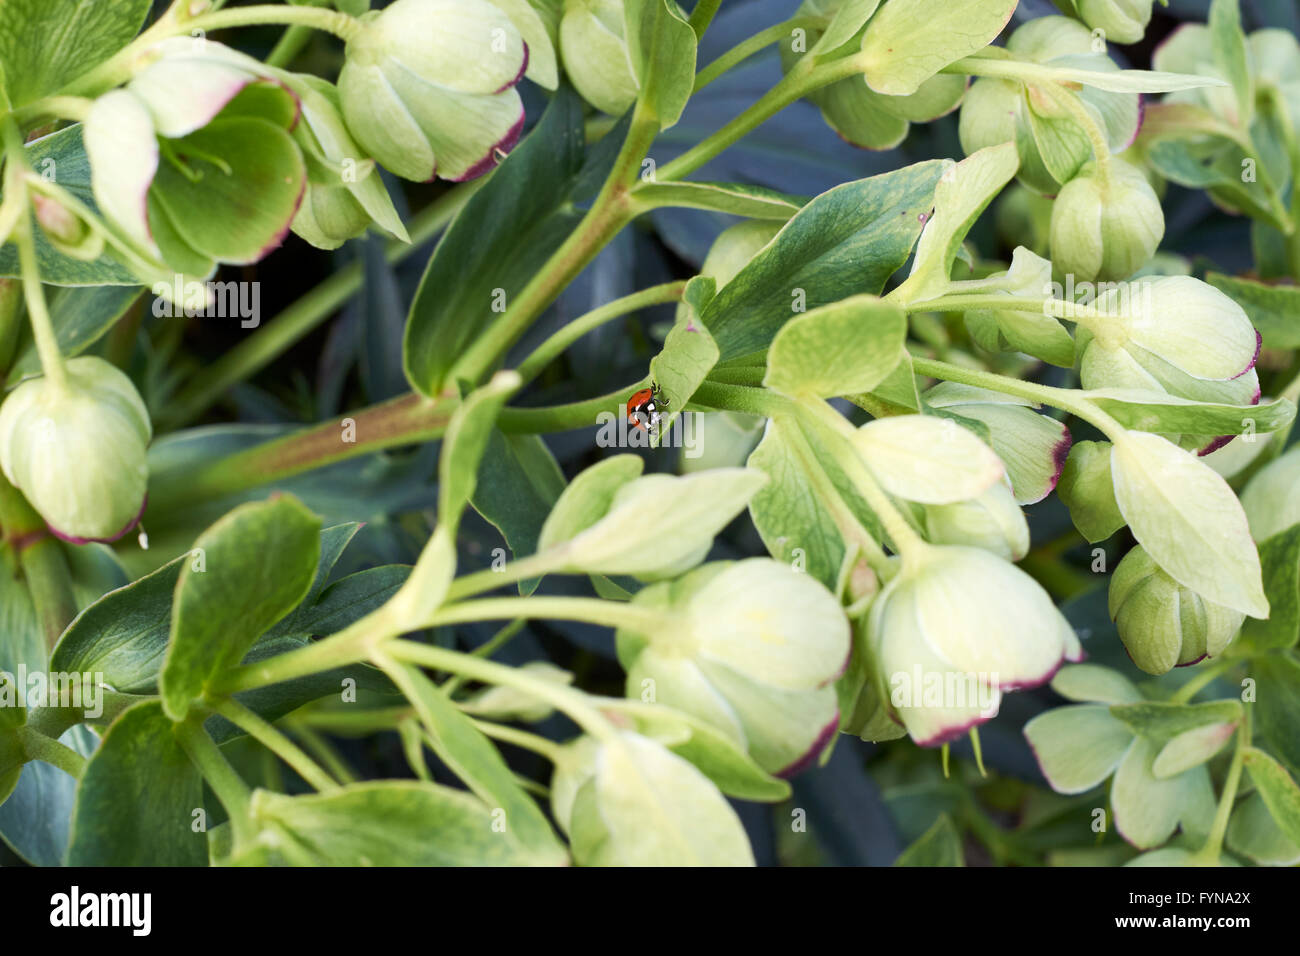 Nieswurz (Helleborus Argutifolius) wachsen im Frühling Garten Blumenbeet mit 7-Punkt-Marienkäfer (Coccinella 7-Trommler). VEREINIGTES KÖNIGREICH. Stockfoto